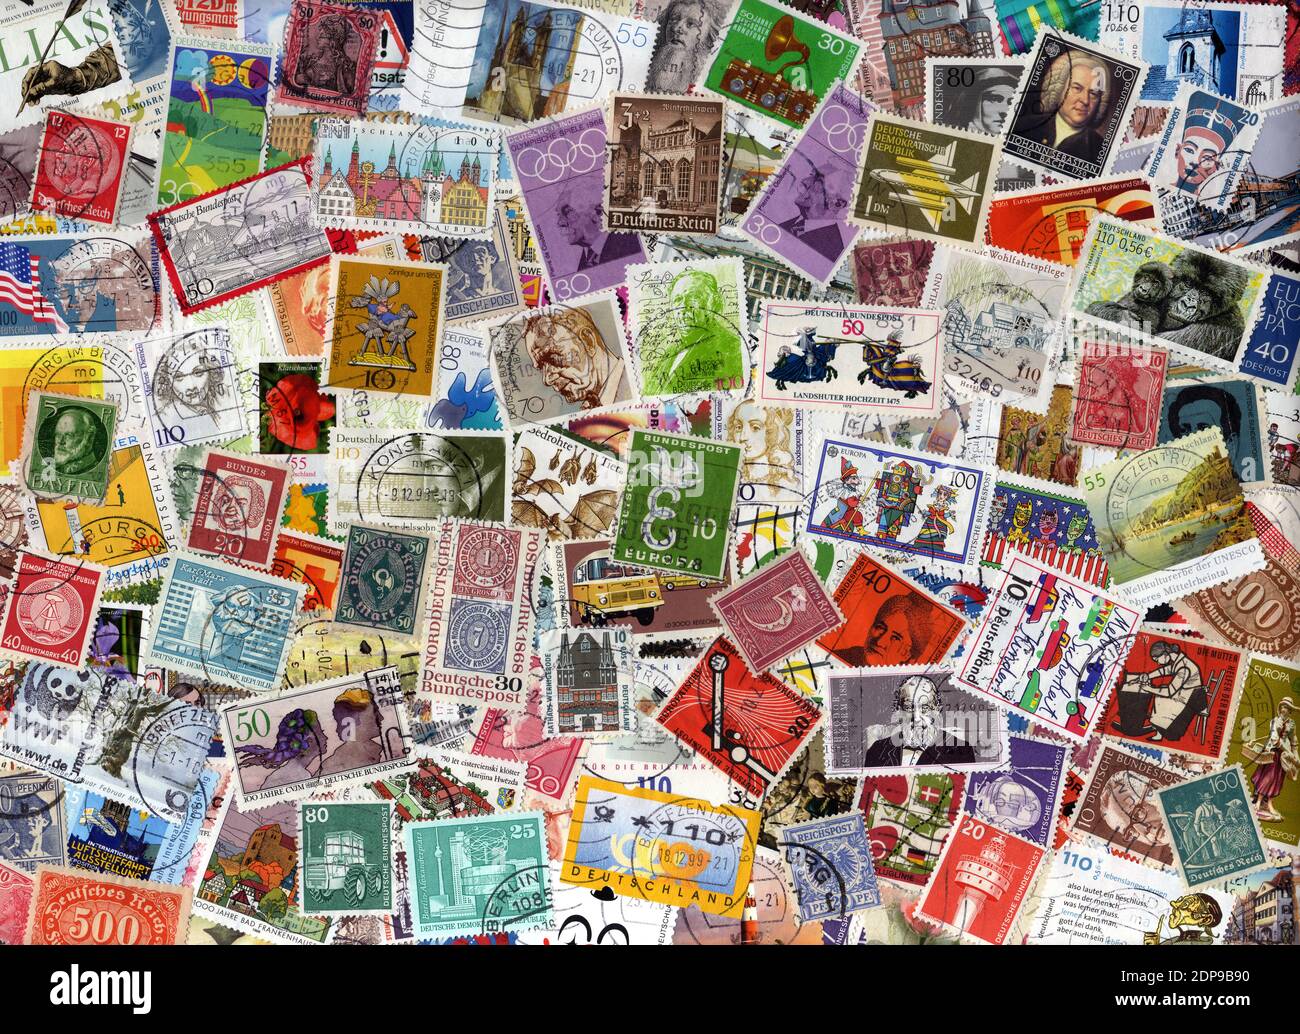 Une grande collection de timbres-poste étrangers allemands, image de stock photo Banque D'Images